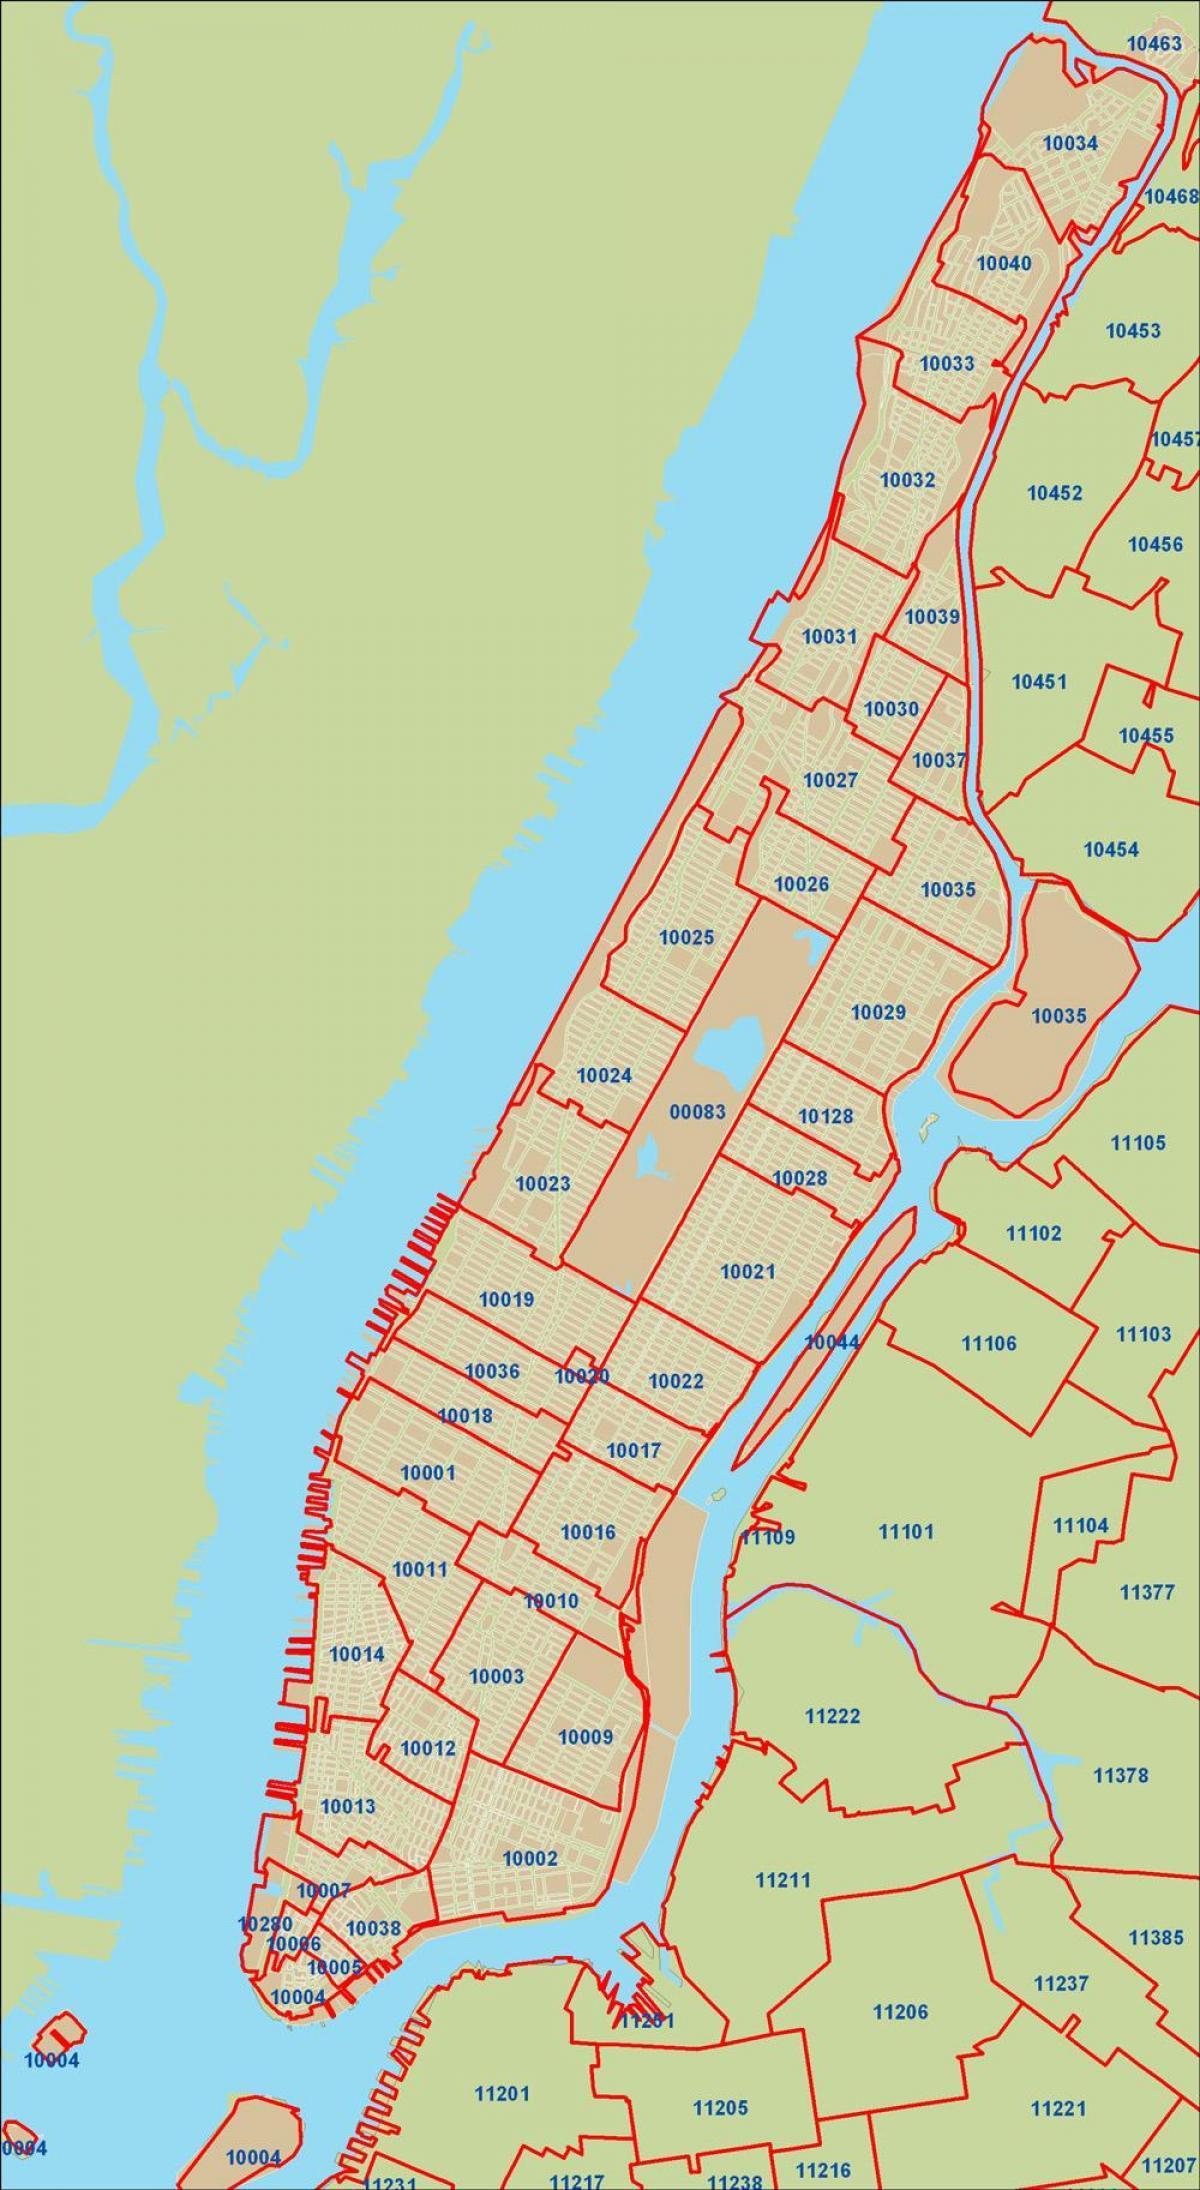 Plan des codes postaux de Manhattan